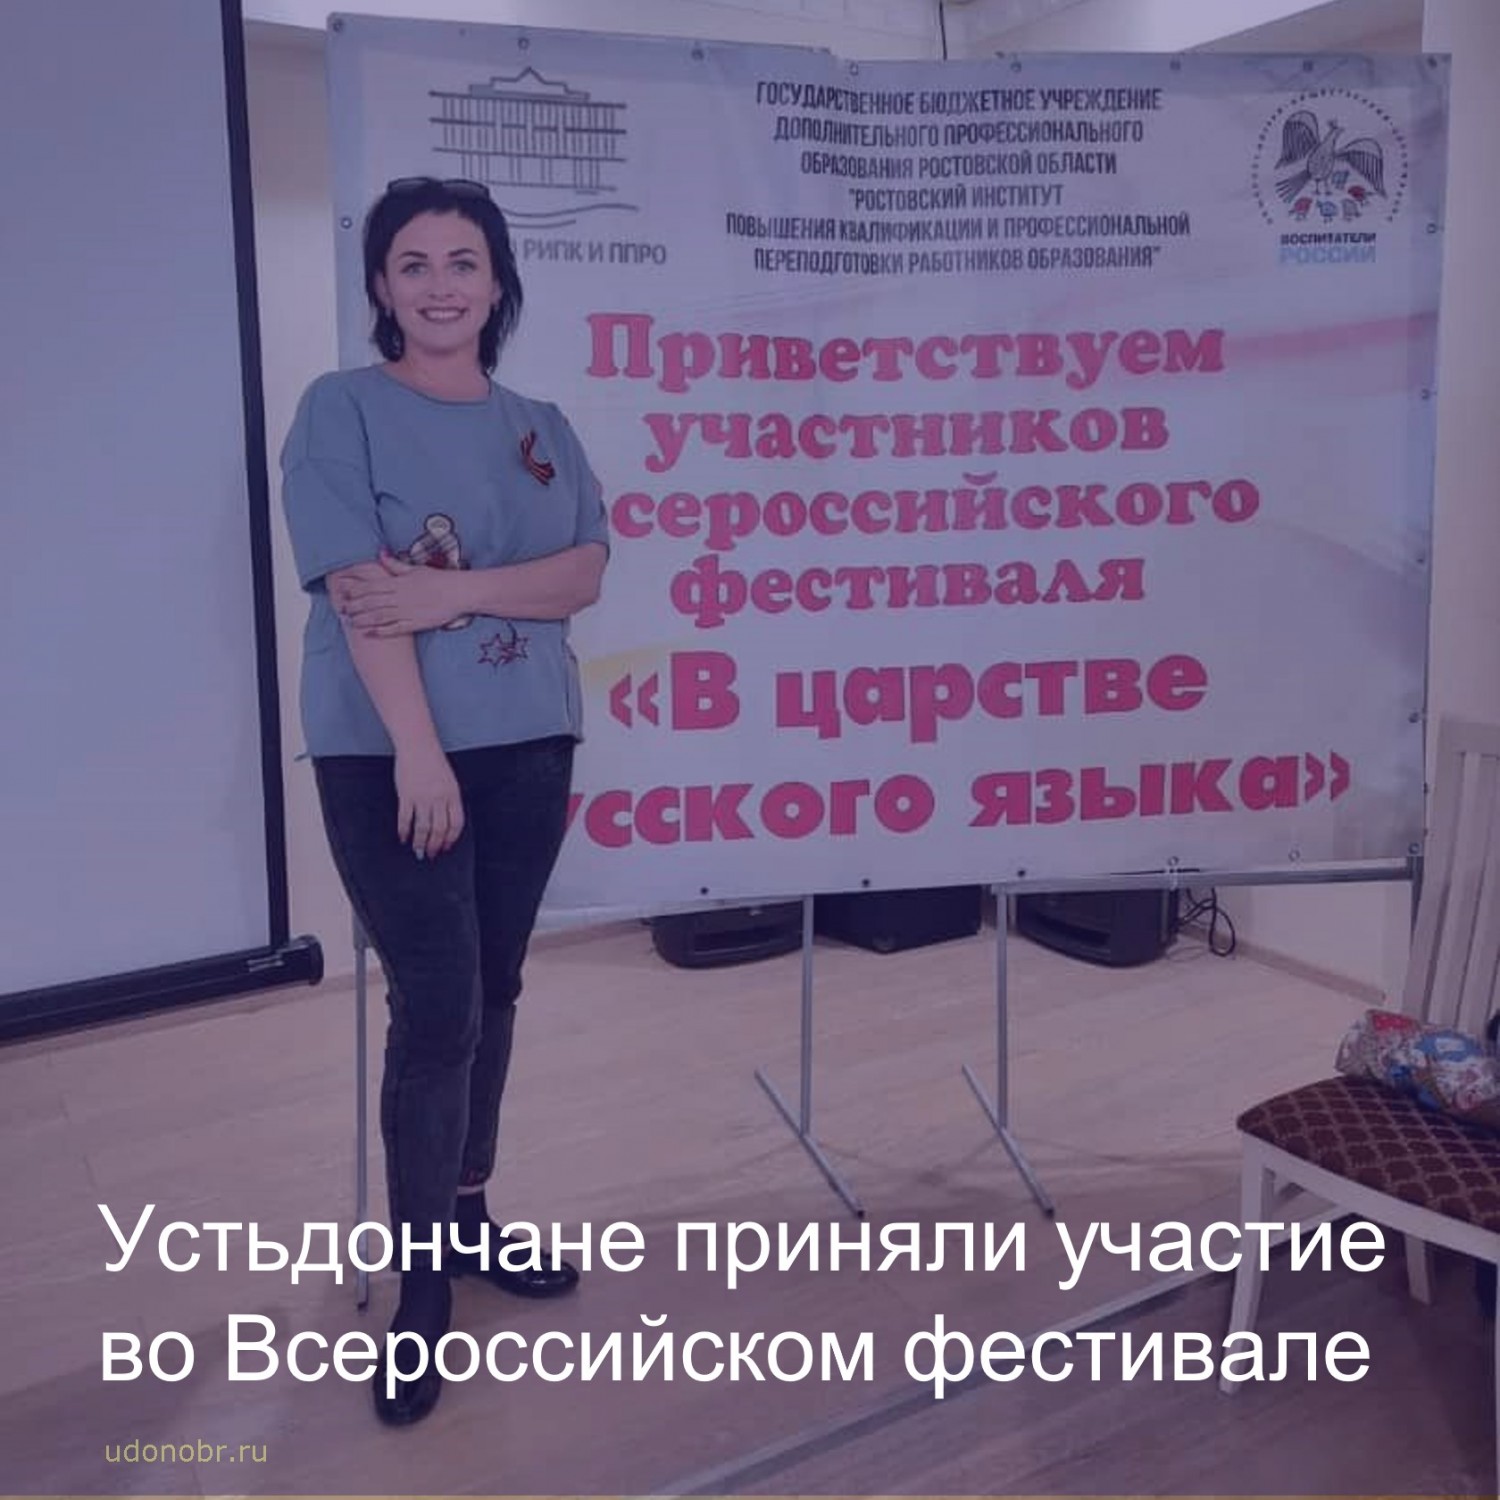 Устьдончане приняли участие во Всероссийском фестивале